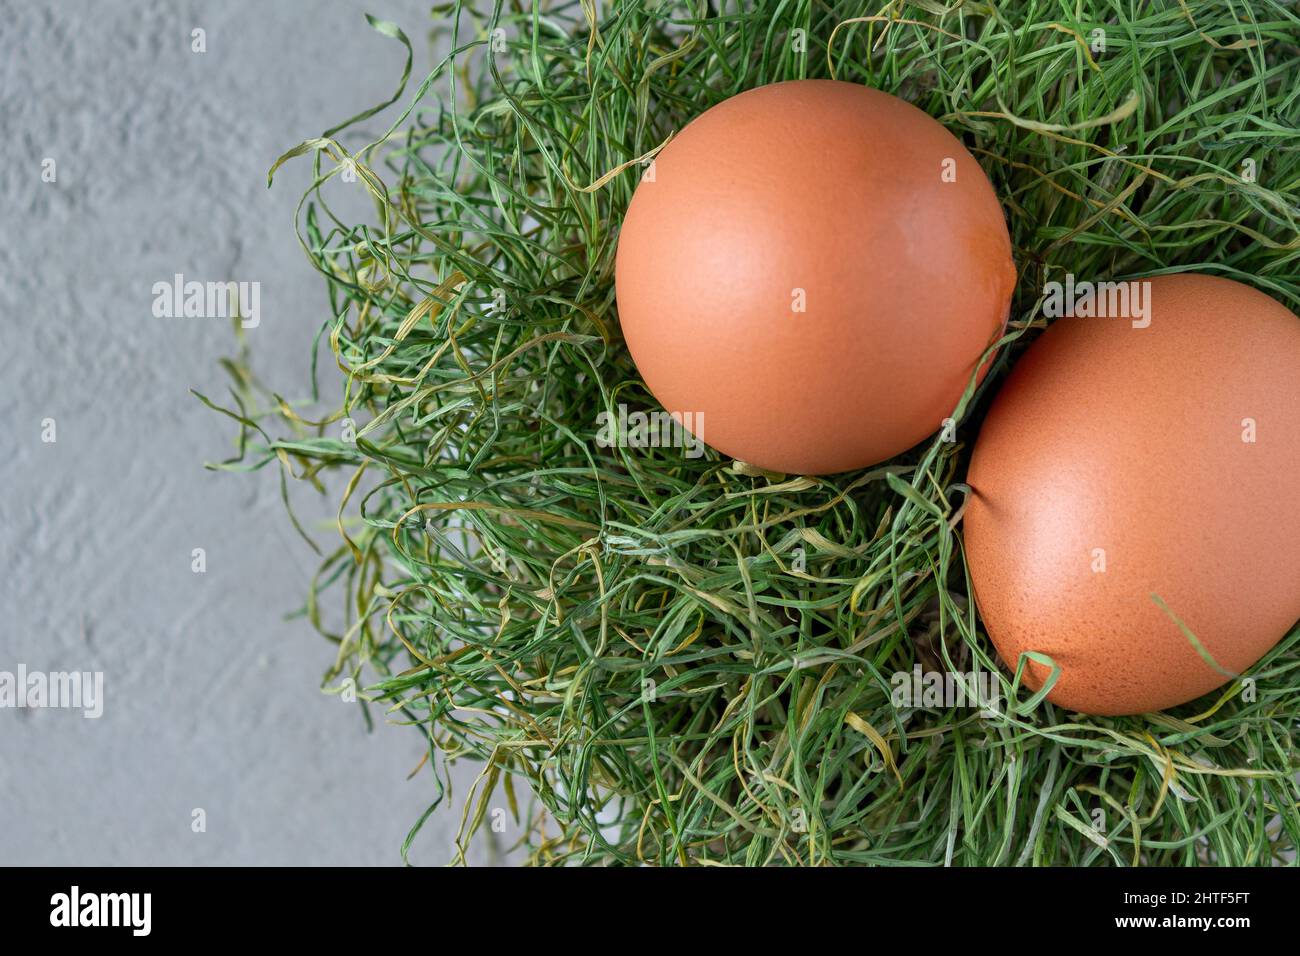 due uova di pollo si trovano in un nido di erba secca, primo piano Foto Stock